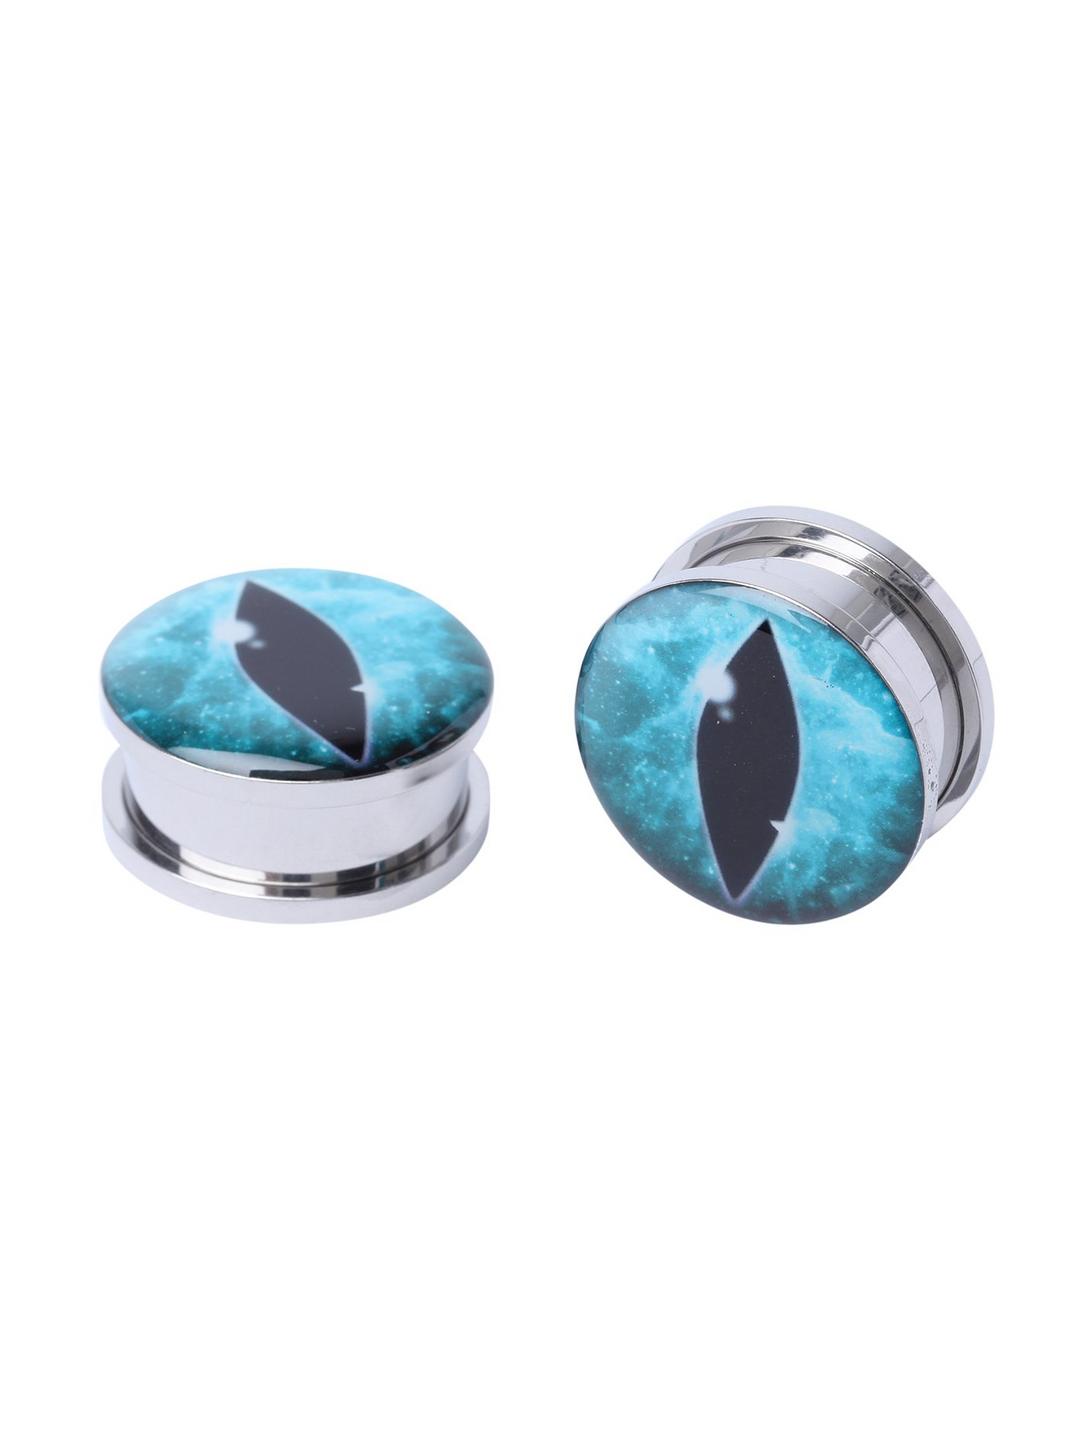 Steel Turquoise Cat Eye Spool Plug 2 Pack, , hi-res